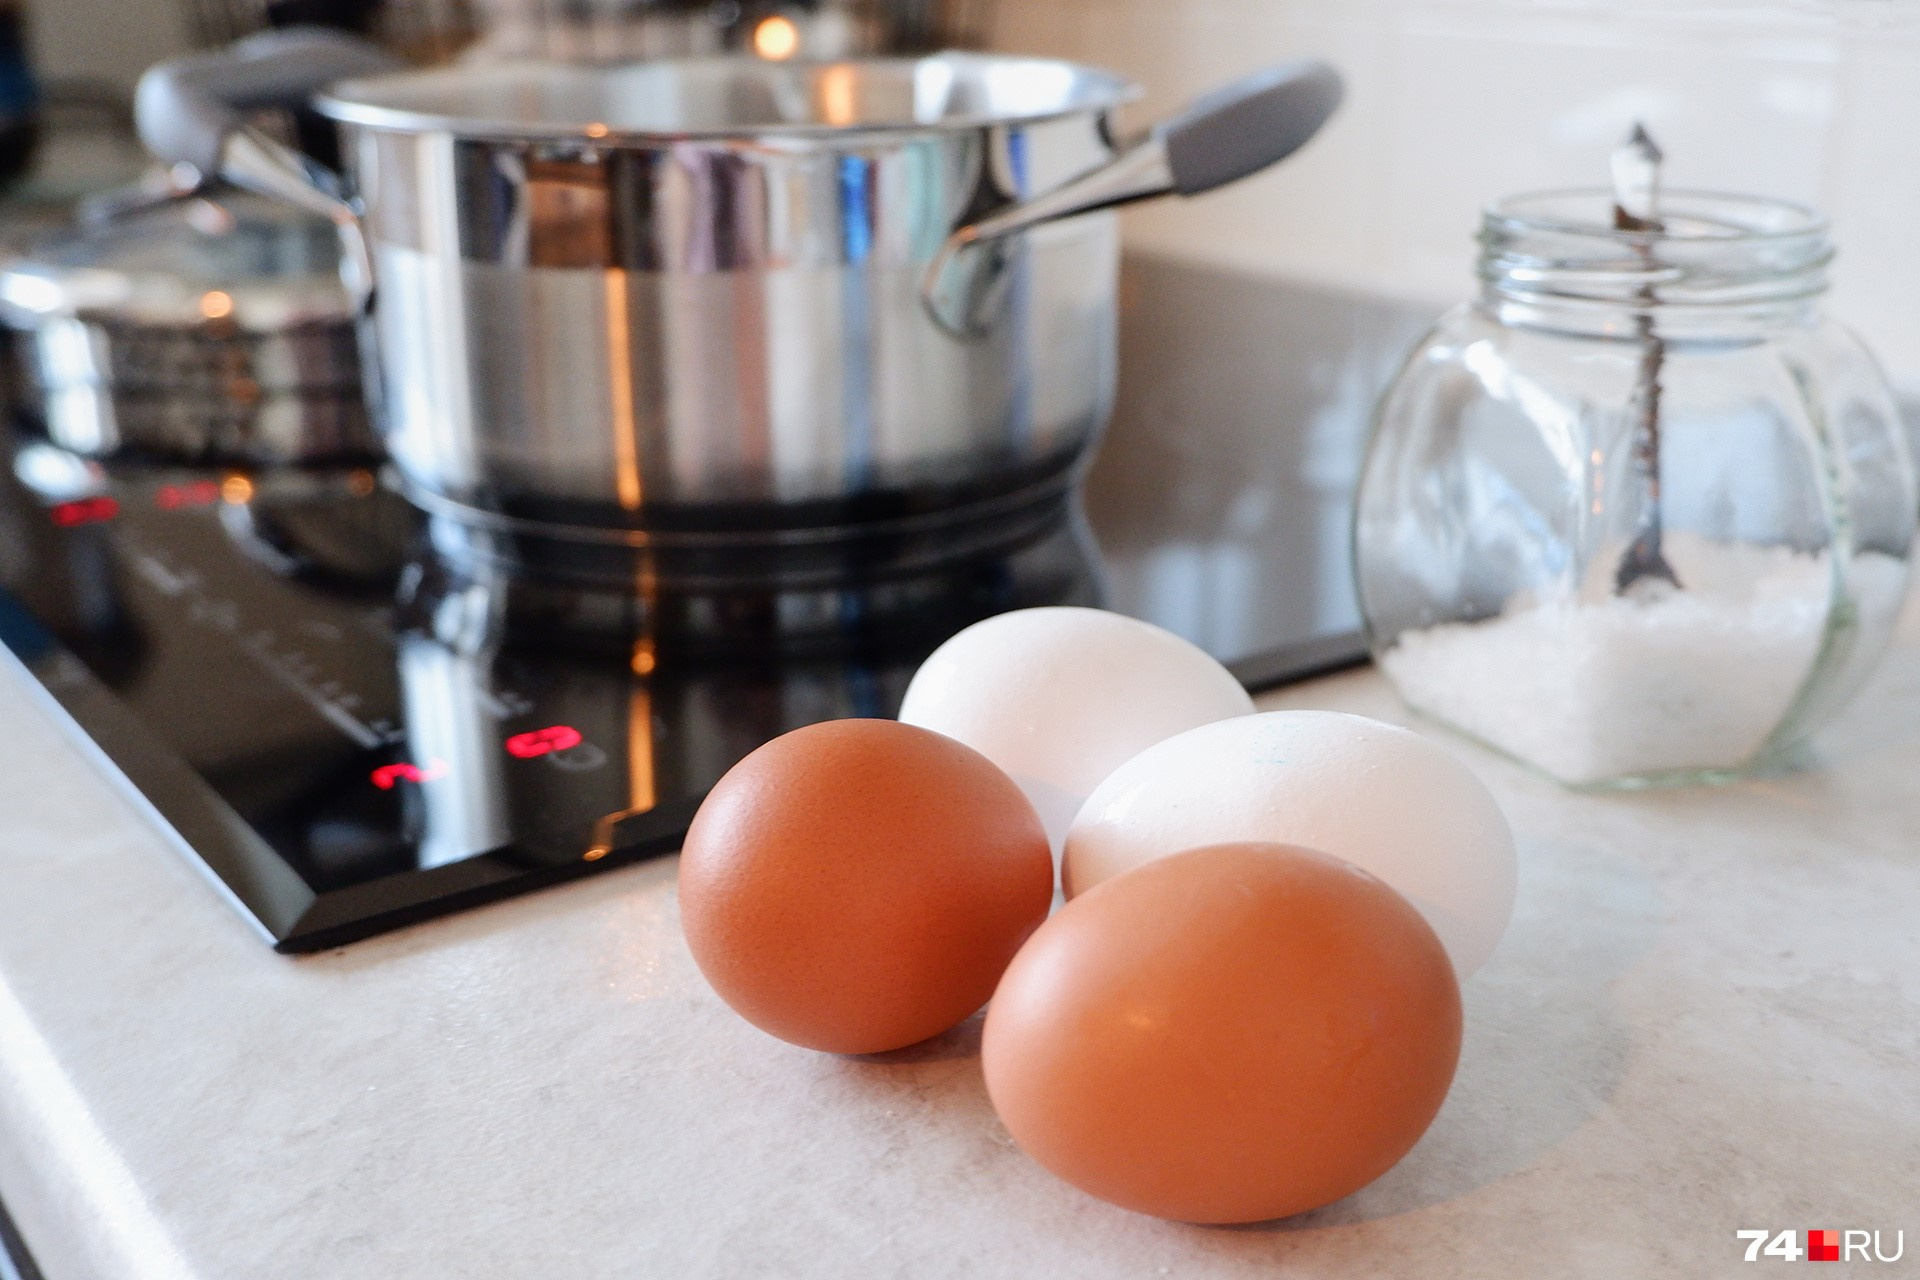 Впитываем новые секретные знания, которые пригодятся любой хозяйке, у которой есть плита, яйца и герань